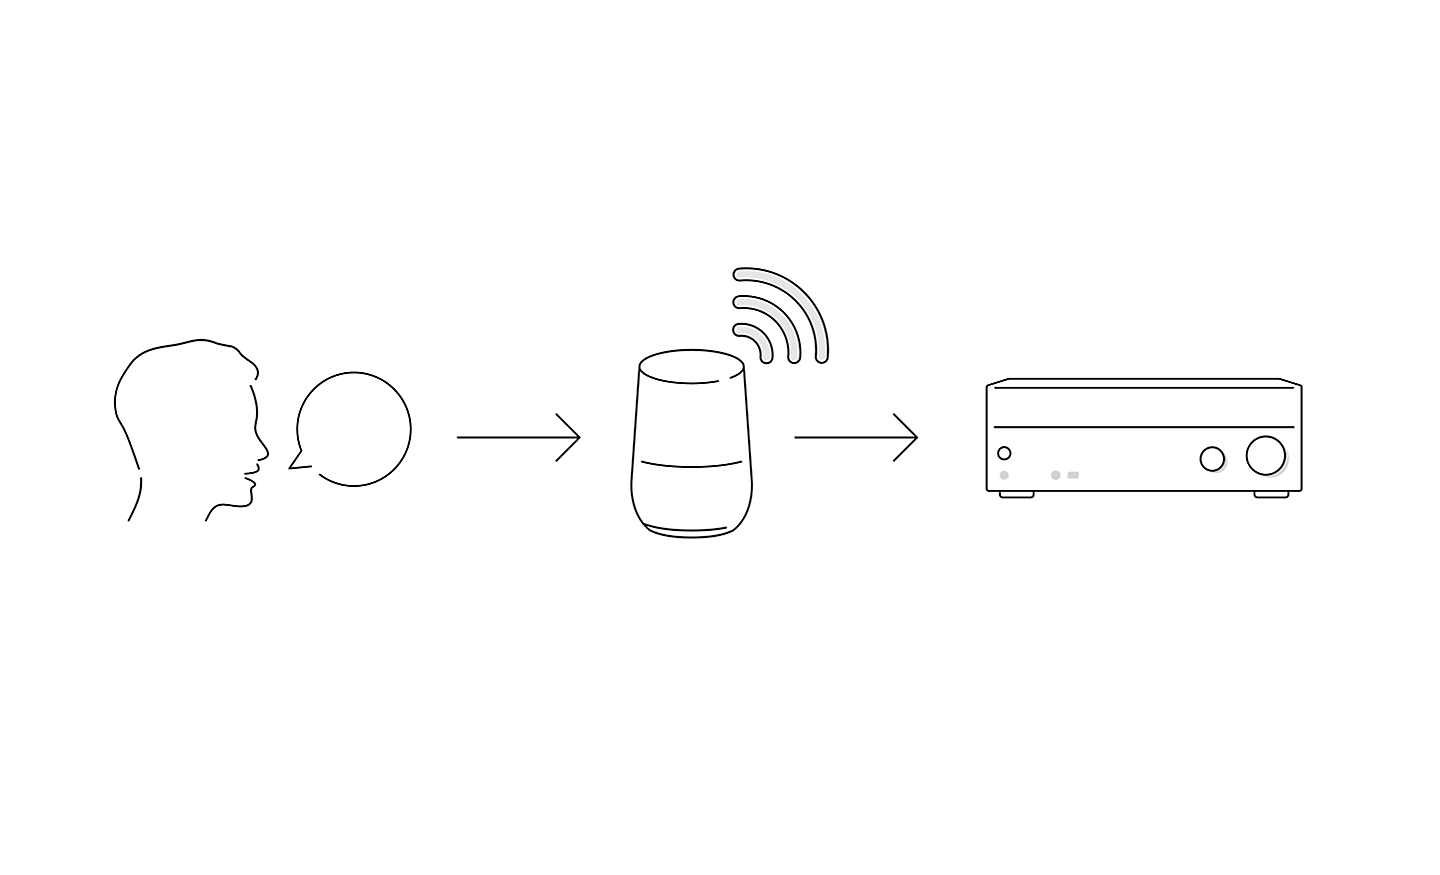 一個頭和對話氣泡的線條圖，氣泡箭頭指向智慧揚聲器，另一個箭頭指向 AV 接收器